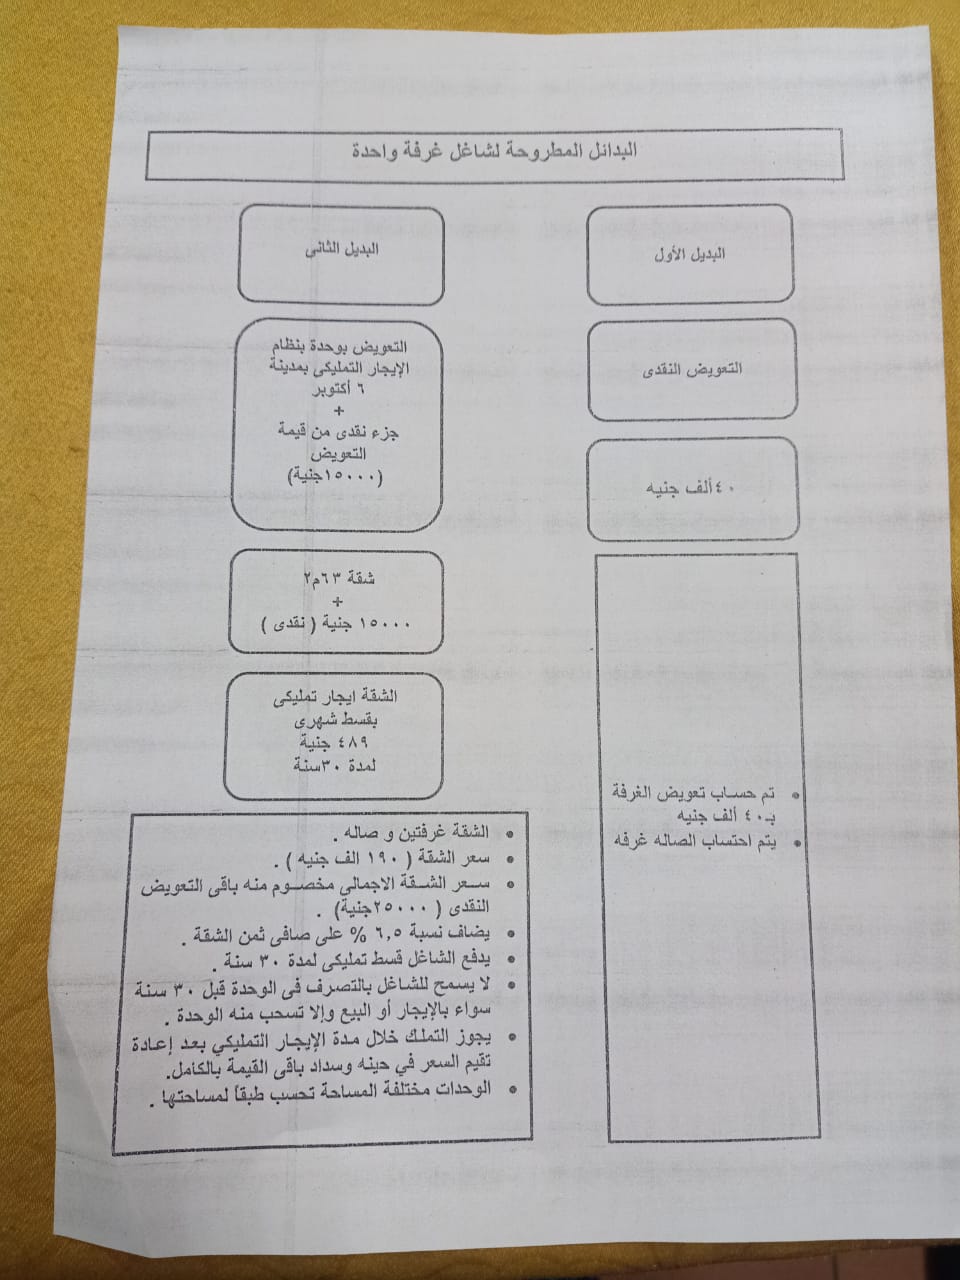 بدائل التعويض "الاجتماعي" المقدمة من محافظة الجيزة لسكان عقارات شارع ترسا (اليوم السابع)